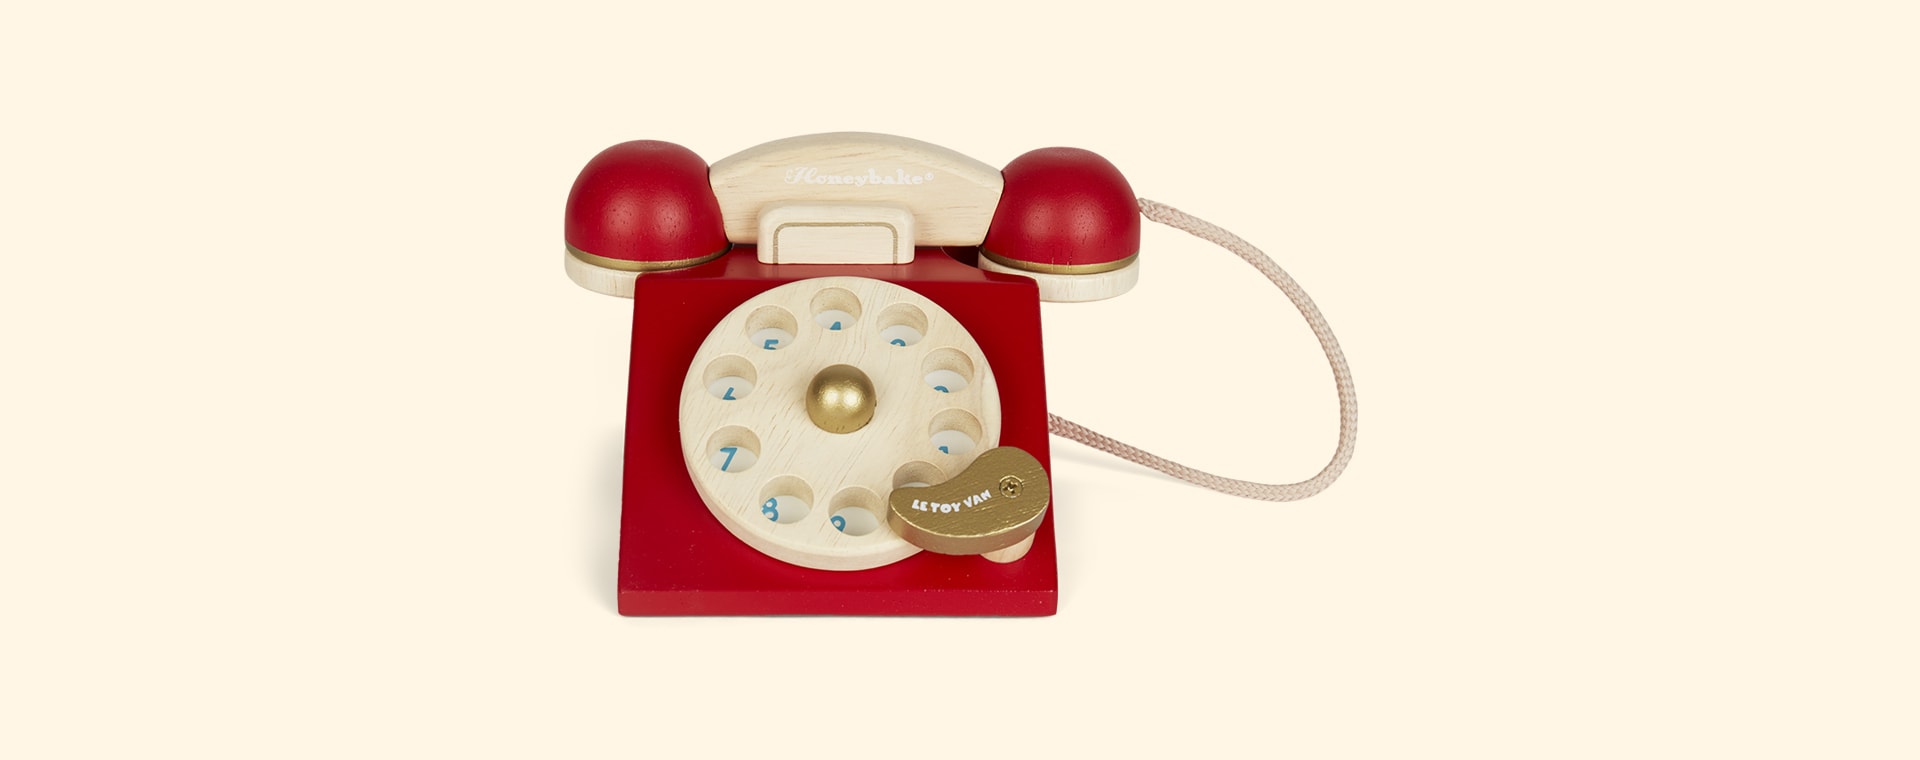 Red Le Toy Van Vintage Phone